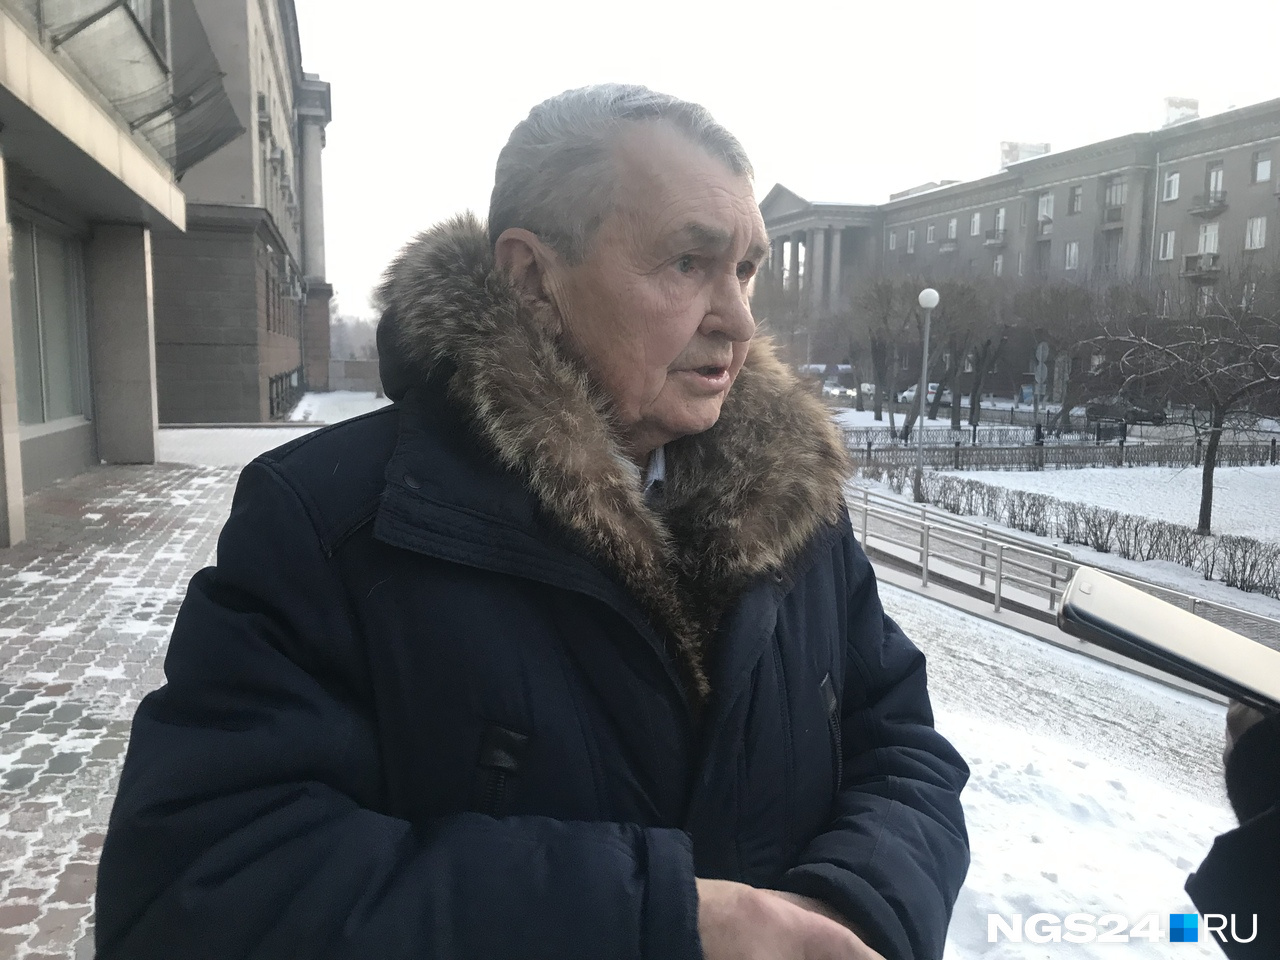 Юрий Мальцев считает ситуацию с дымкой нормальной для Красноярска. Зимой, по его мнению, будет хуже